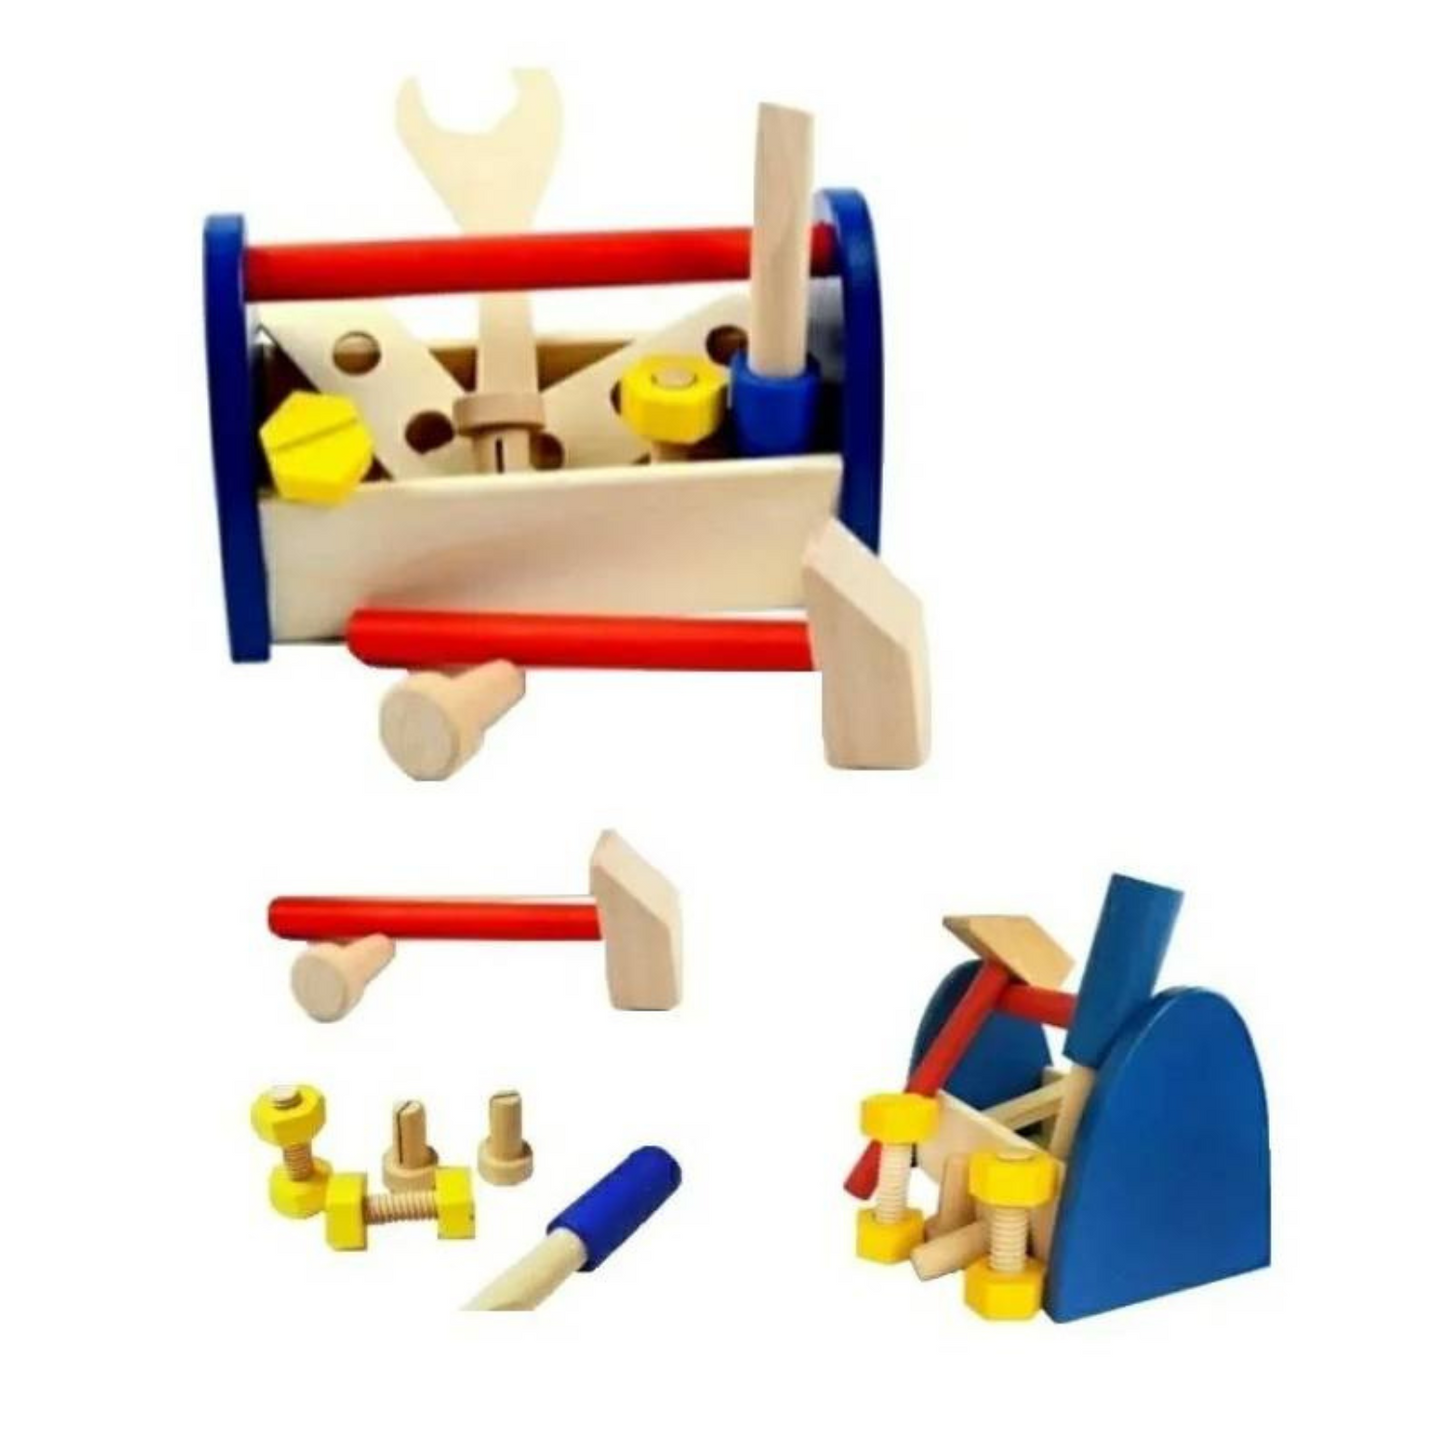 Juego de herramientas de madera para niños, kit de herramientas para niños  con caja de herramientas de madera, juguete educativo STEM de construcción